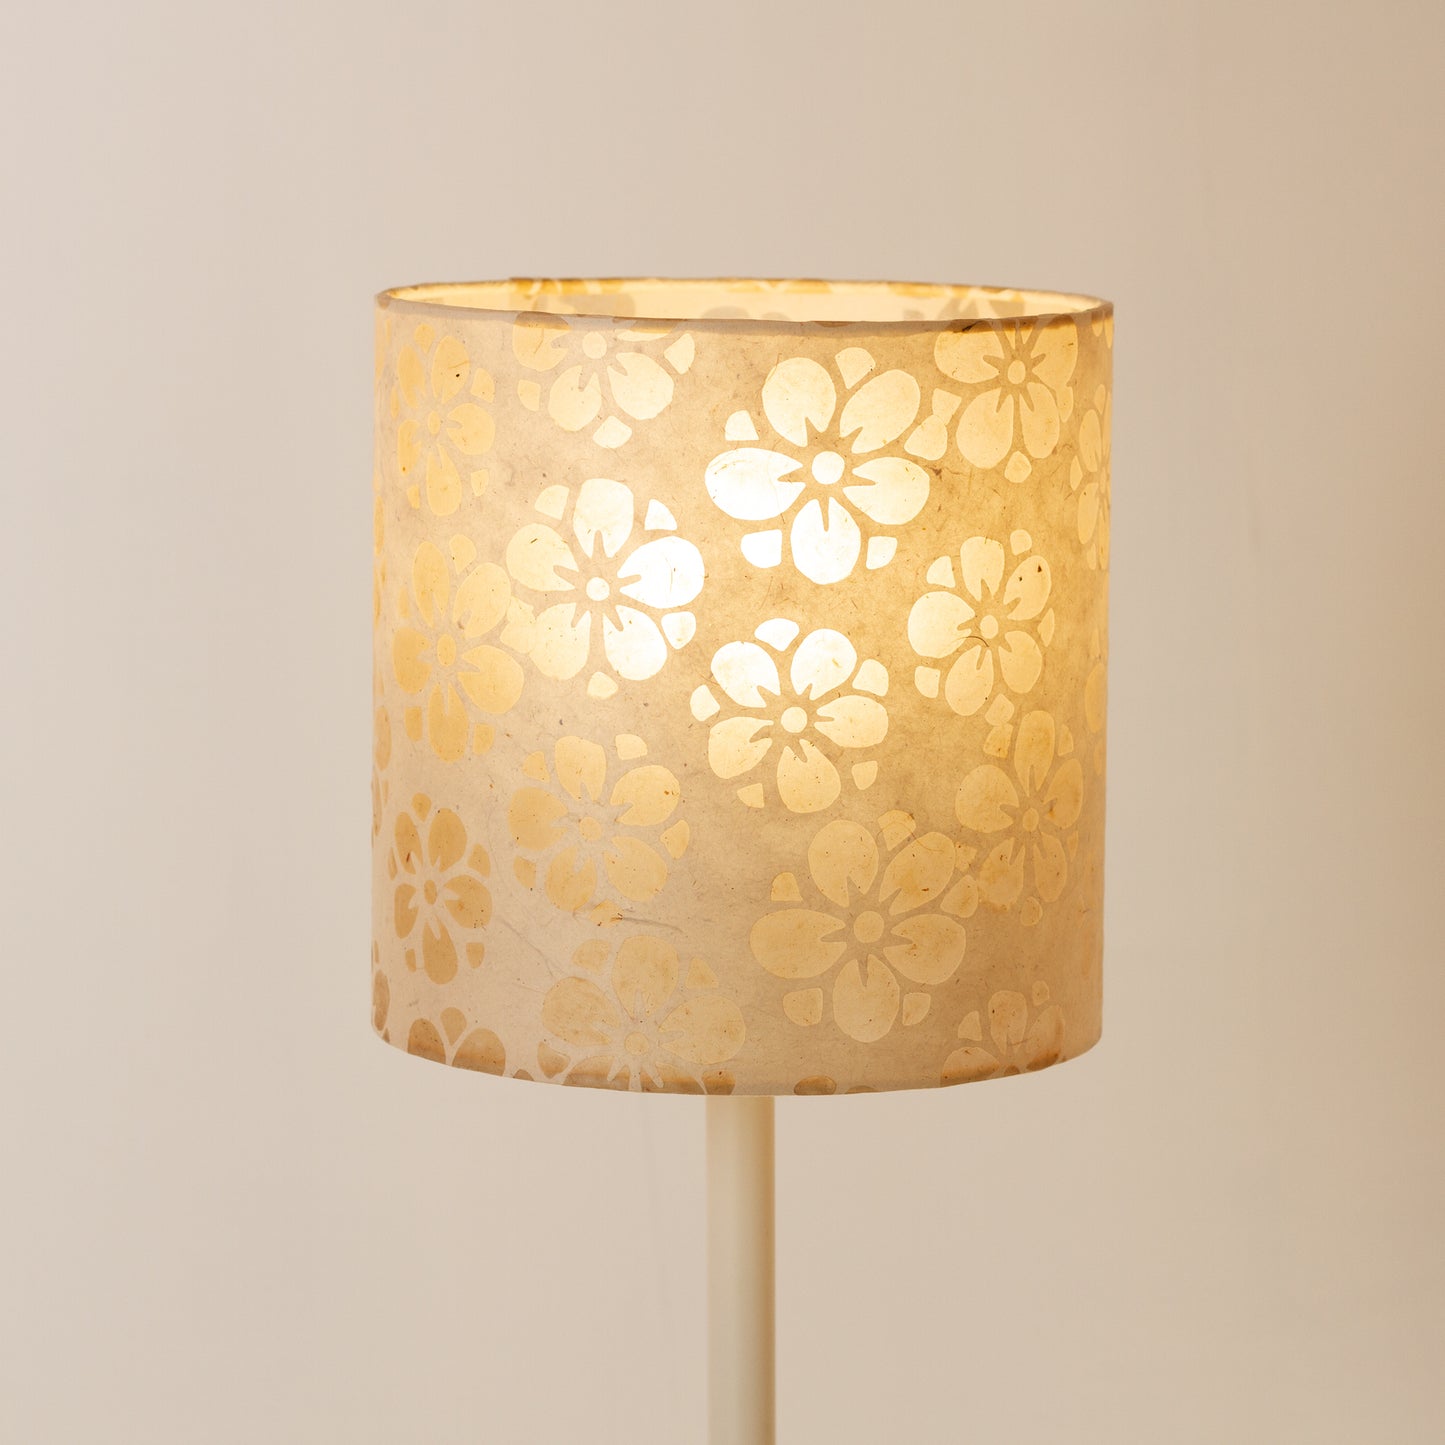 Drum Lamp Shade - P75 - Batik Star Flower Natural, 20cm(d) x 20cm(h)